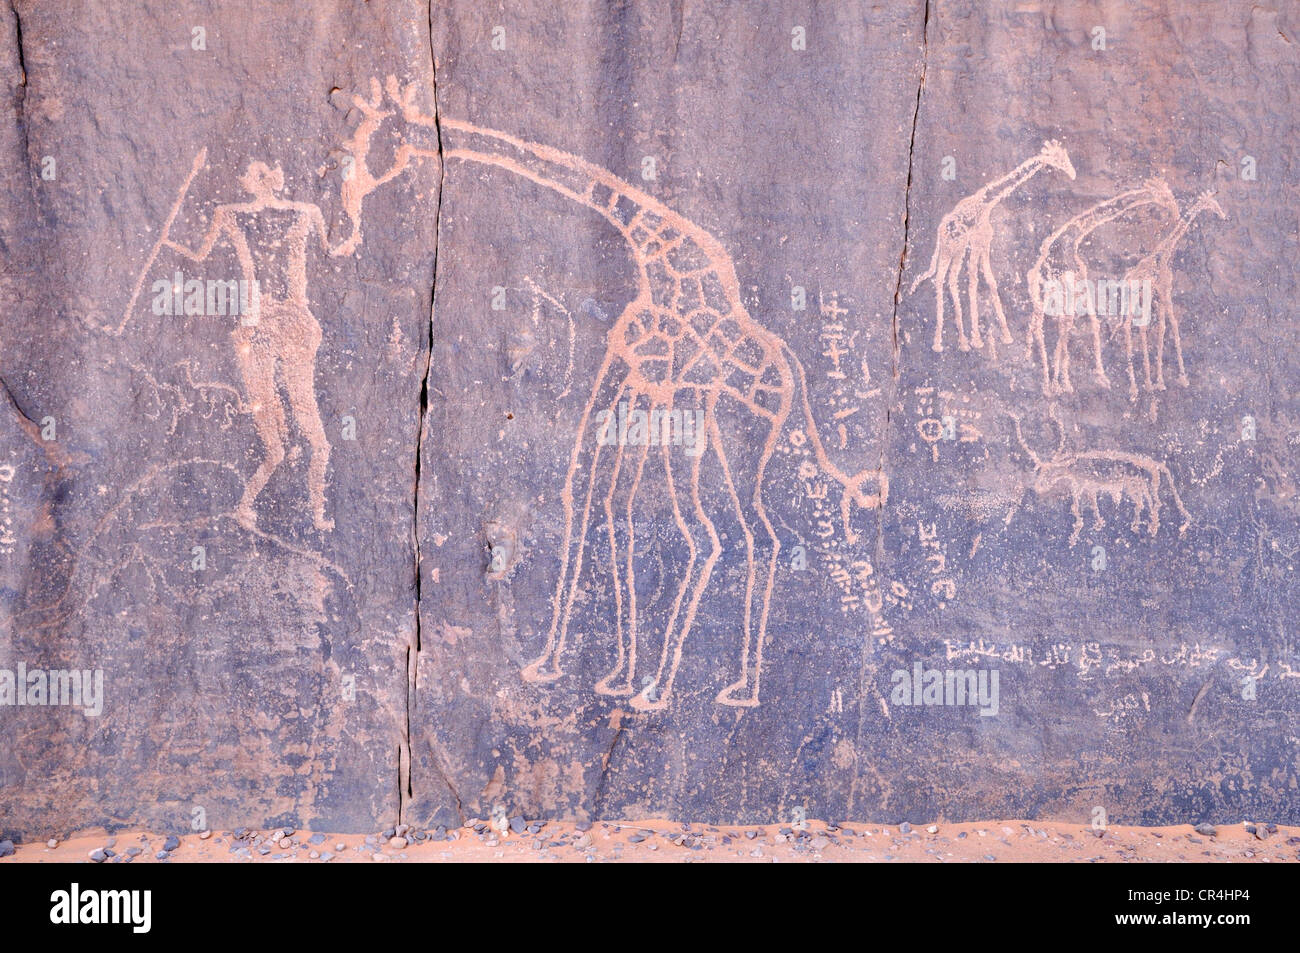 Neolithic rock art, giraffe engraving, of the Tadrart, Tassili n'Ajjer National Park, Unesco World Heritage Site, Algeria Stock Photo